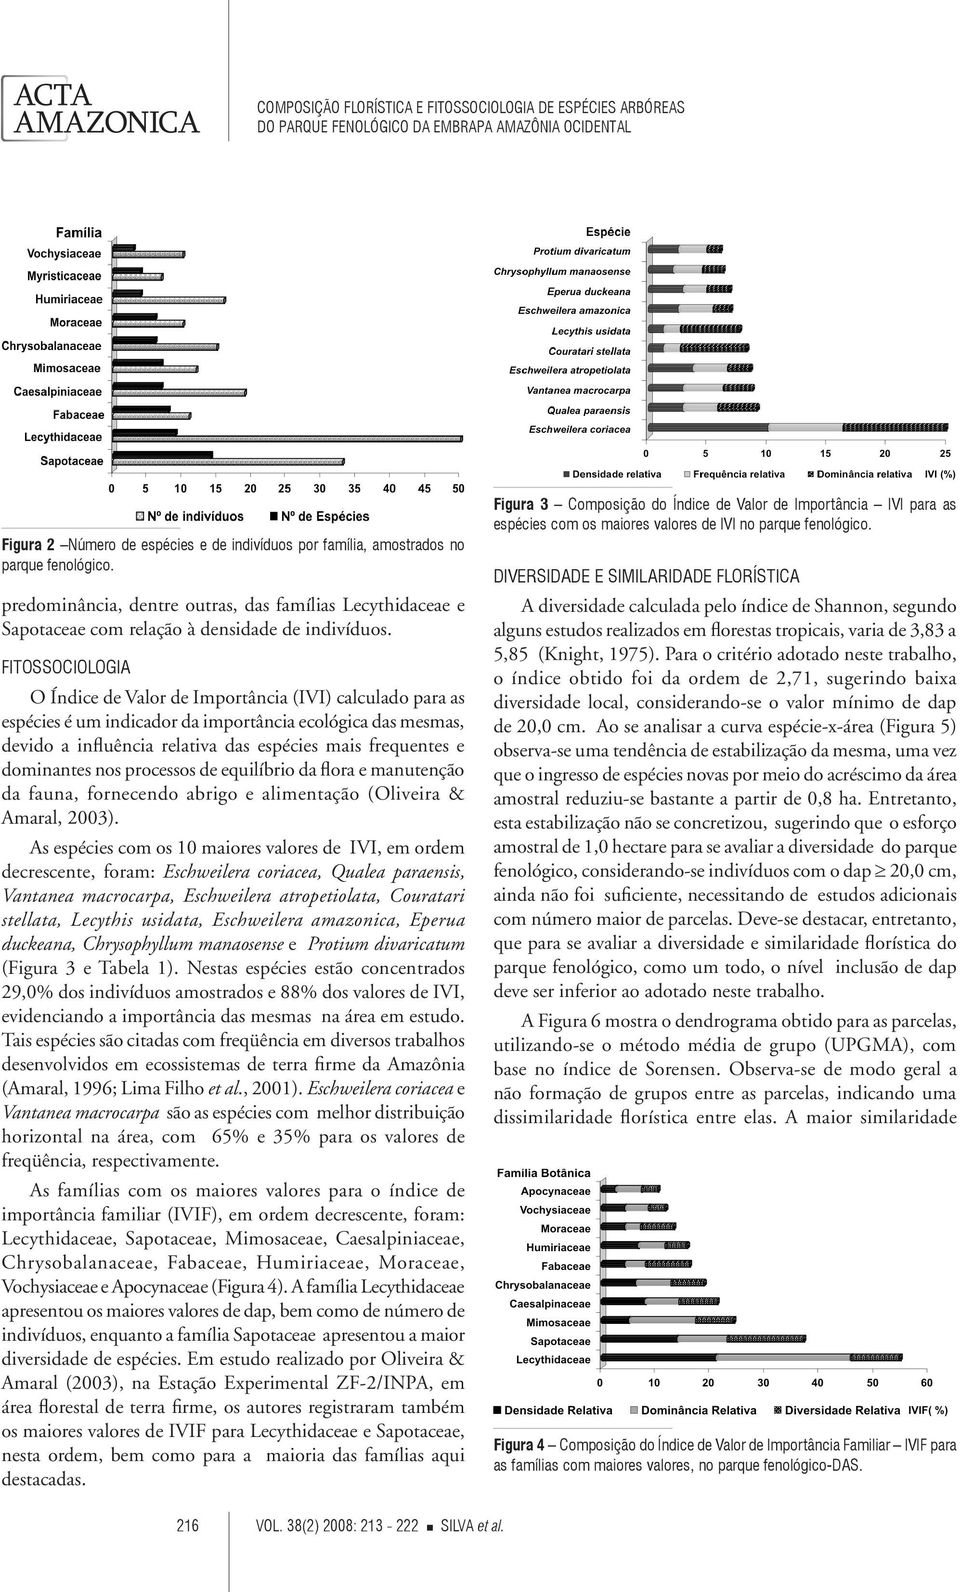 dominantes nos processos de equilíbrio da flora e manutenção da fauna, fornecendo abrigo e alimentação (Oliveira & Amaral, 2003).